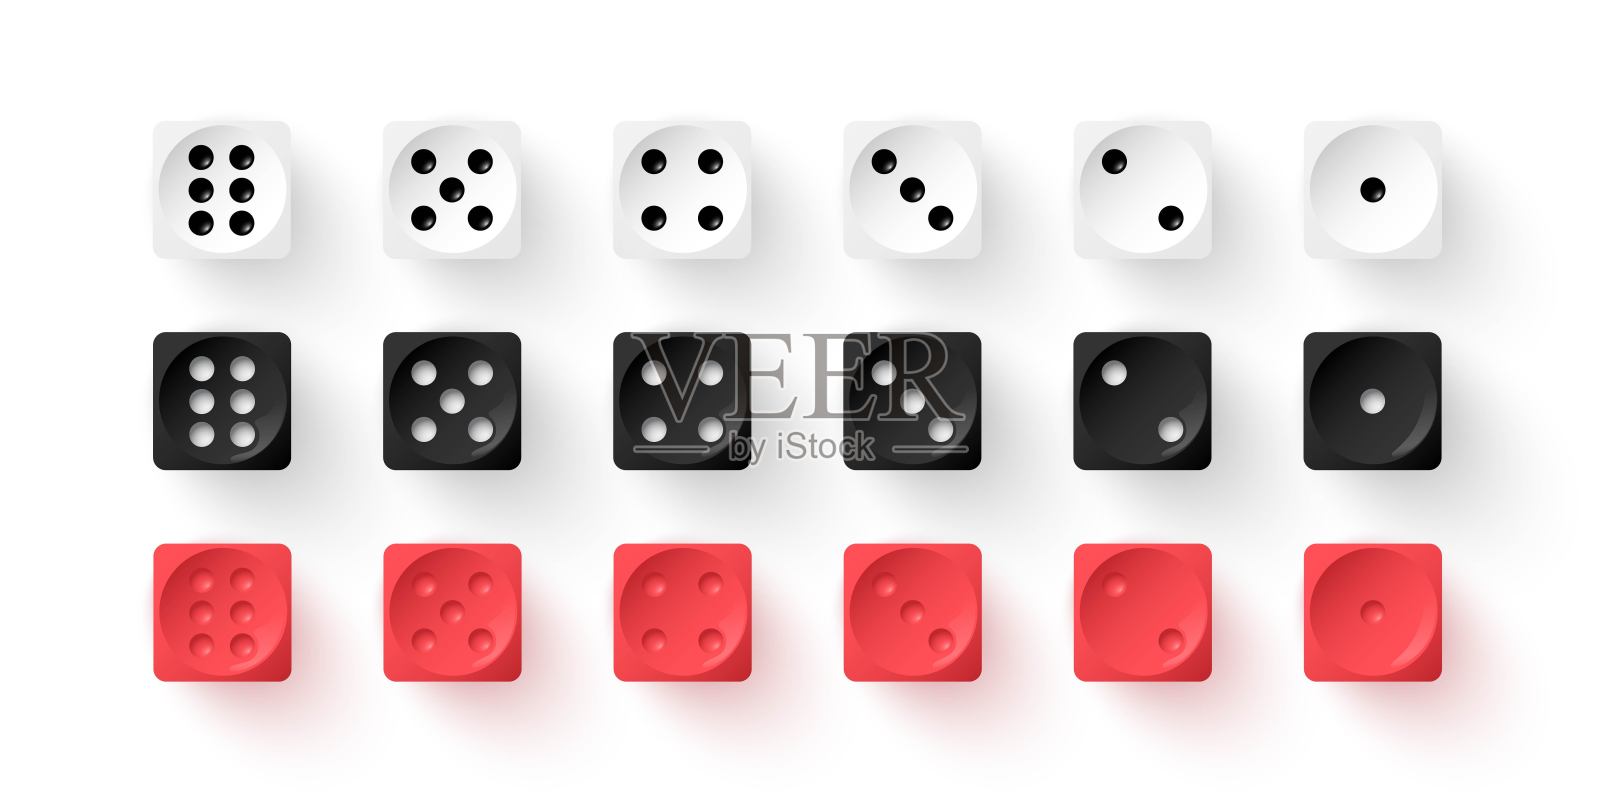 【出口环保料】透明骰子 麻将配件骰子 15mm圆角常规点 6面骰子-阿里巴巴